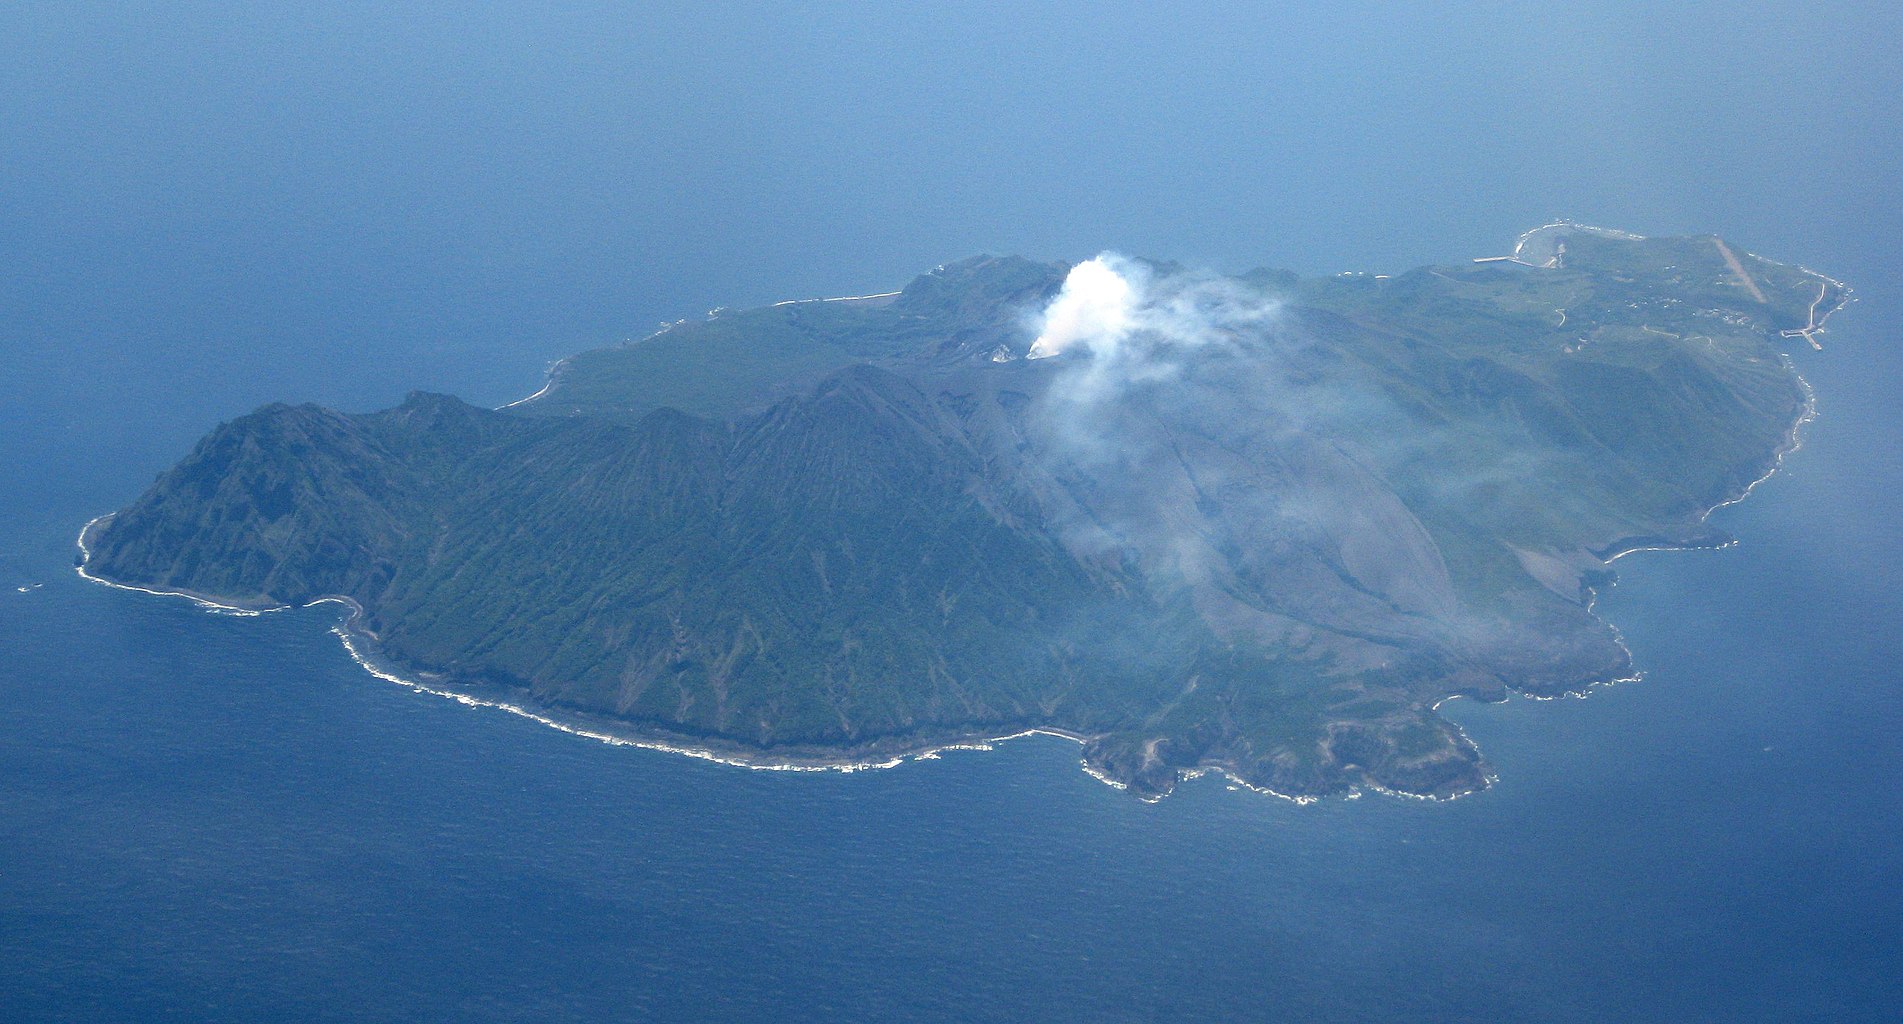 2022鹿儿岛县立吉野公园游玩攻略,... 鹿儿岛的樱岛火山与海面...【去哪儿攻略】